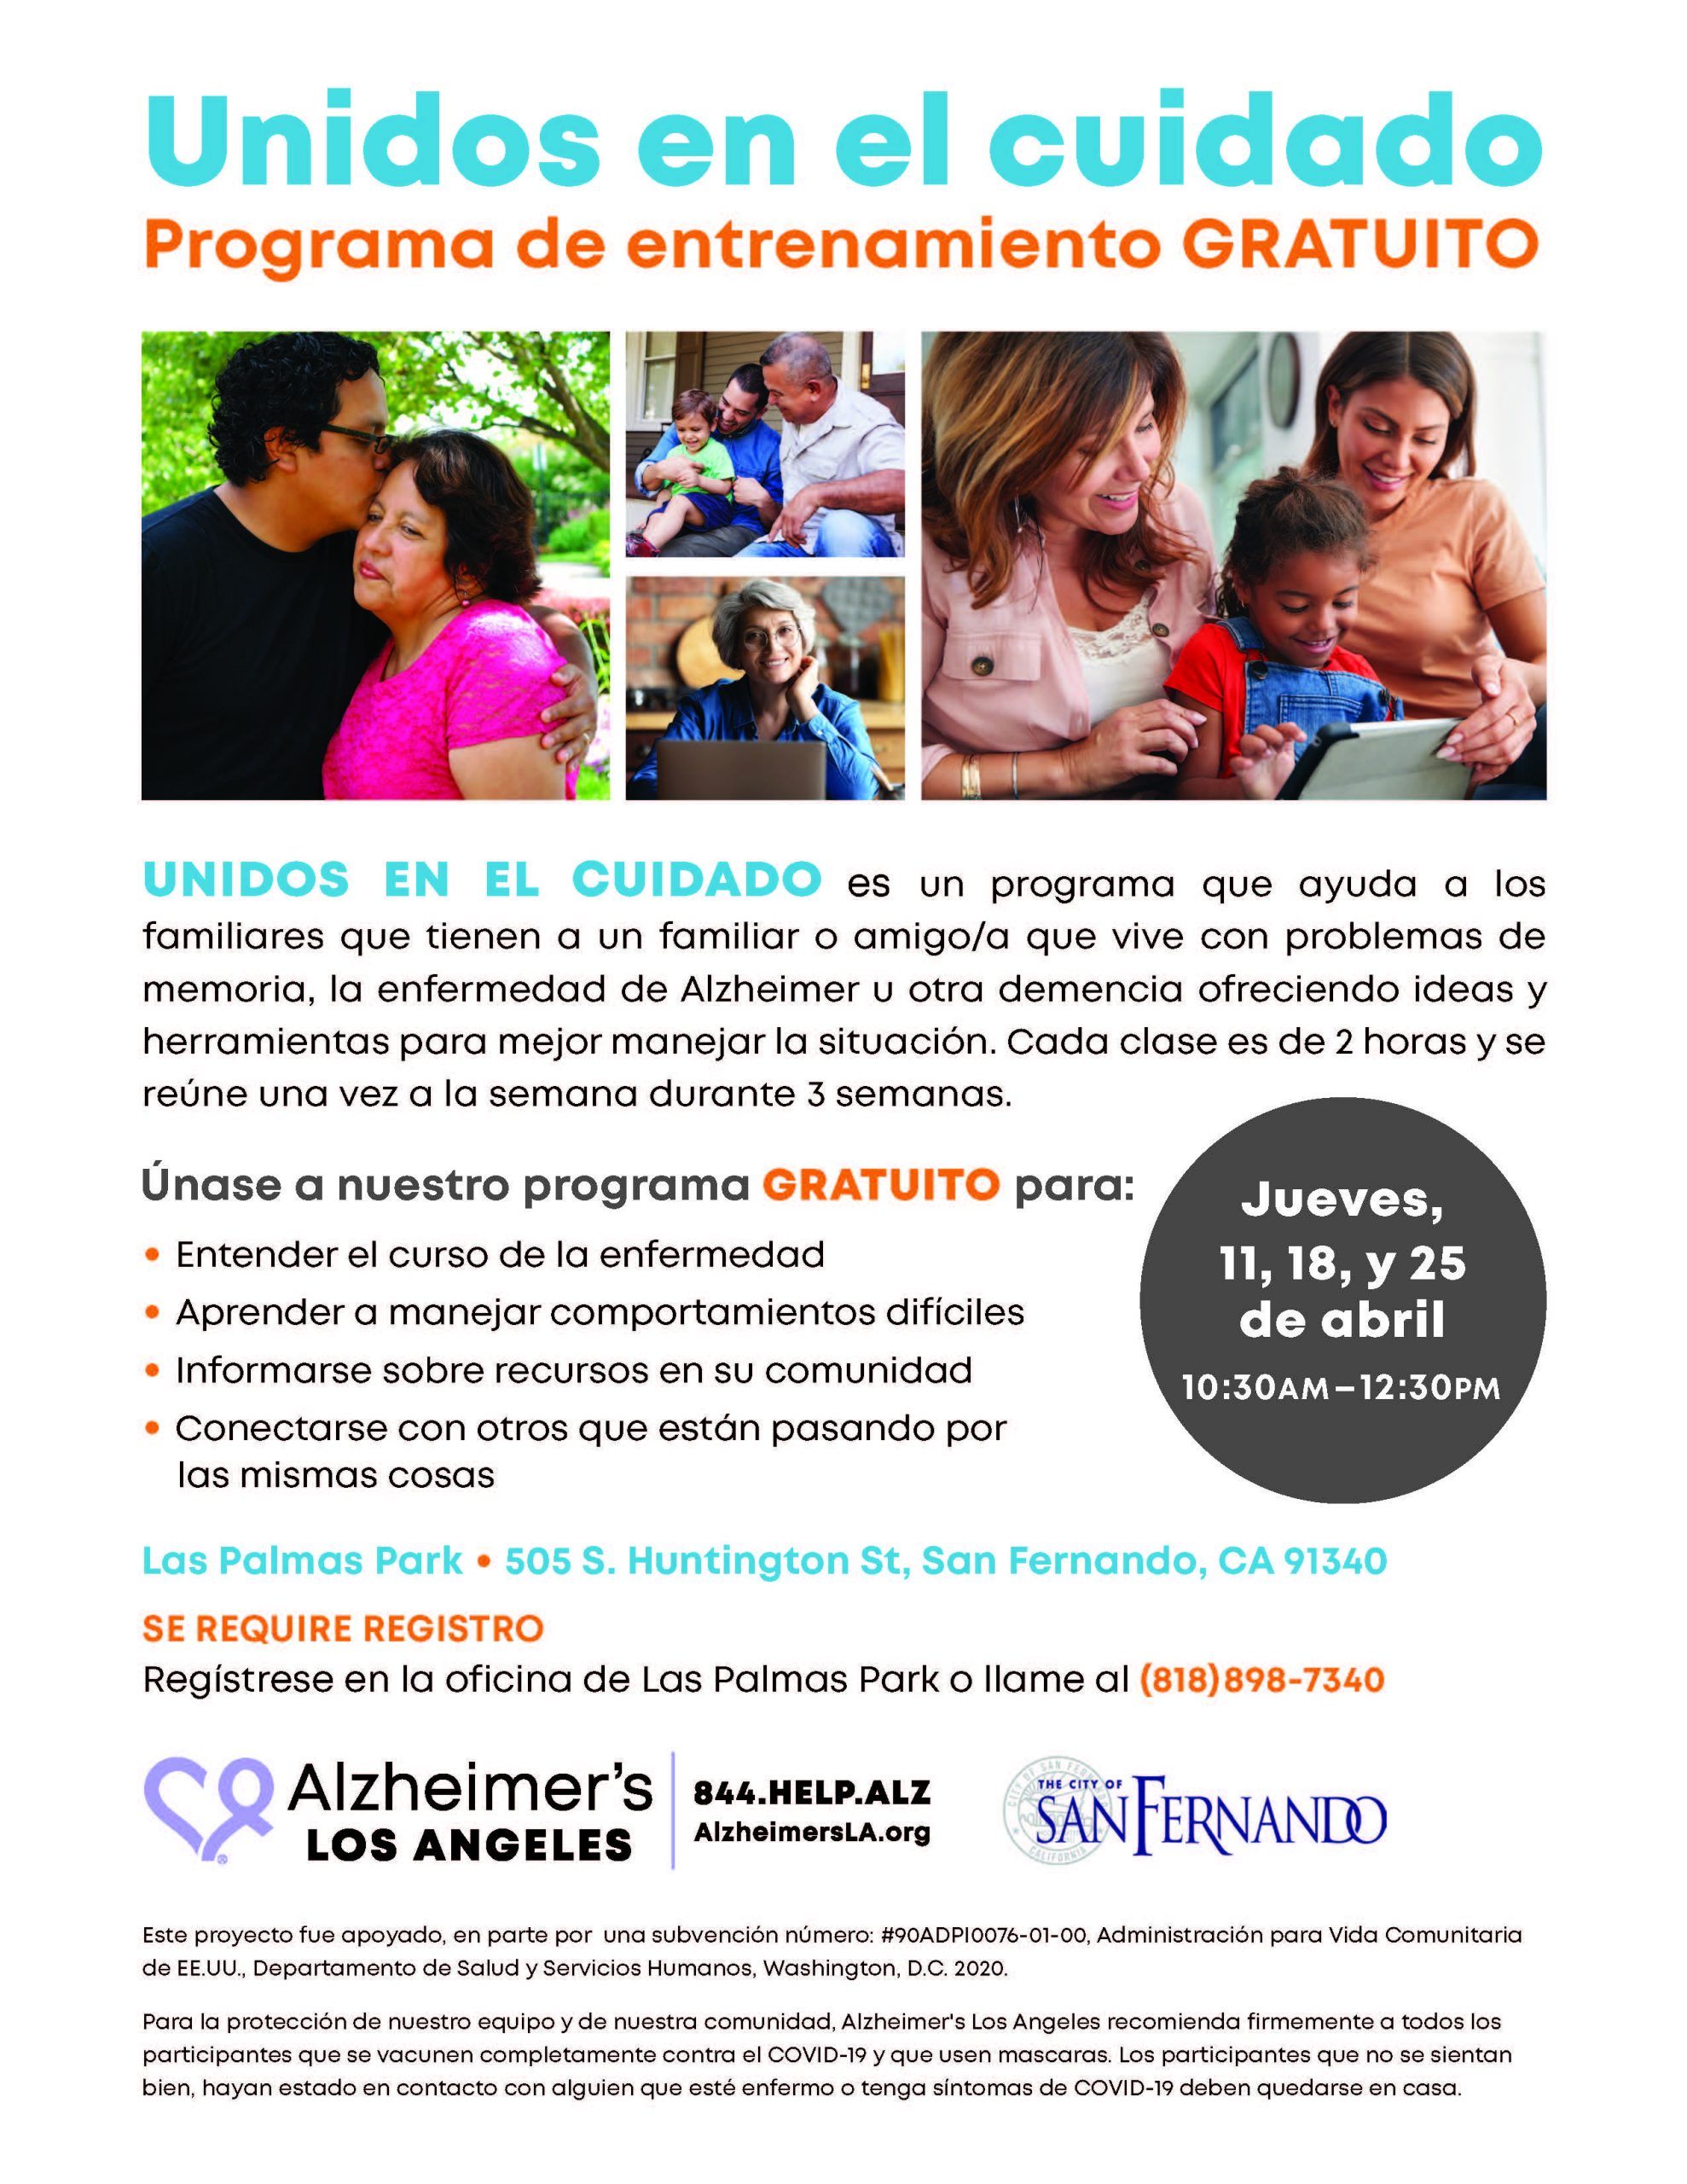 Alzheimer's LA Unidos en el Cuidado (Flyer)